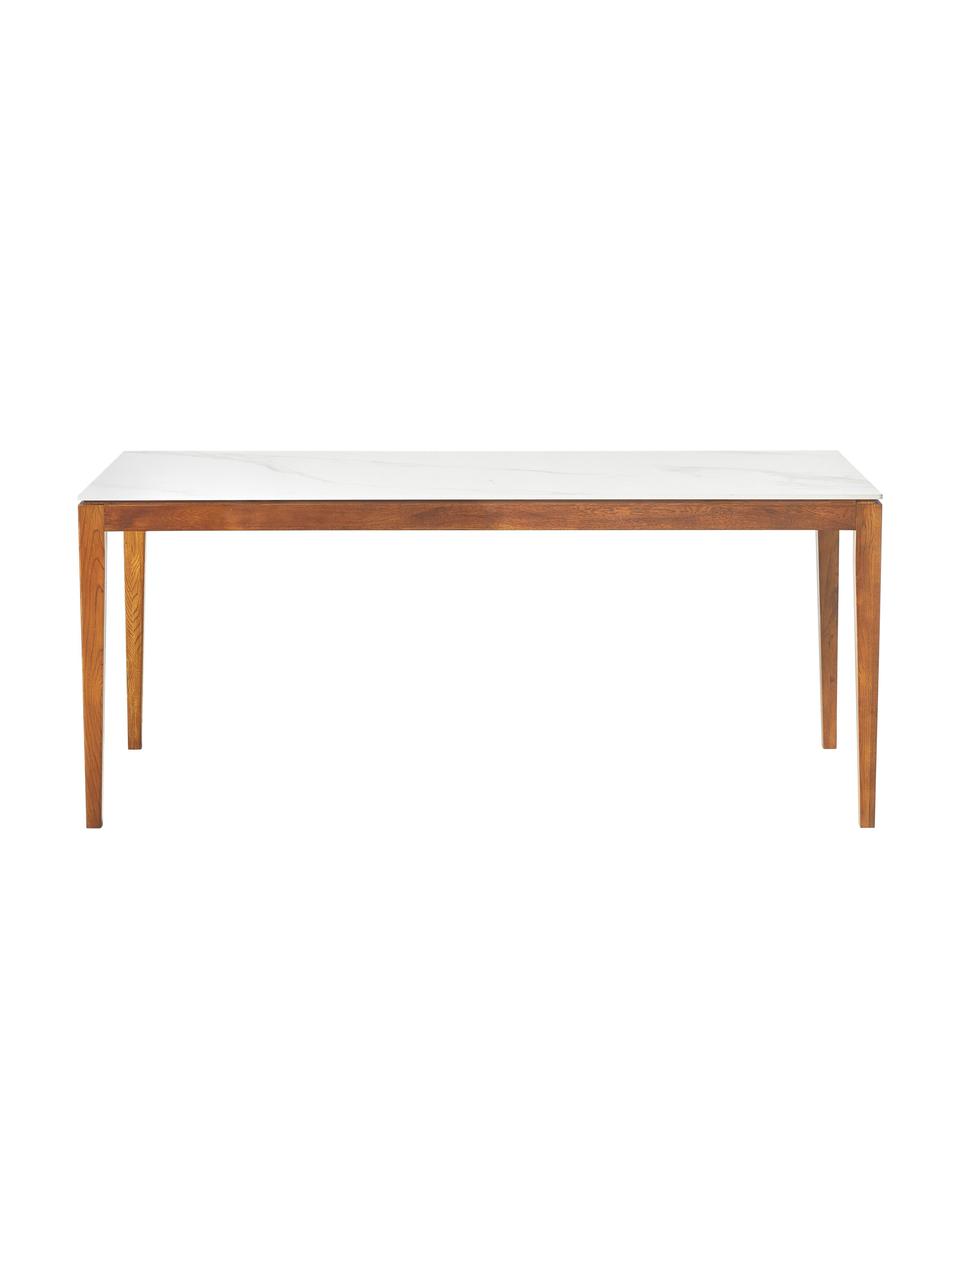 Jídelní stůl s deskou v mramorovém vzhledu Jackson, různé velikosti, Bílý mramorový vzhled, hnědě lakované dubové dřevo, Š 140 cm, H 90 cm